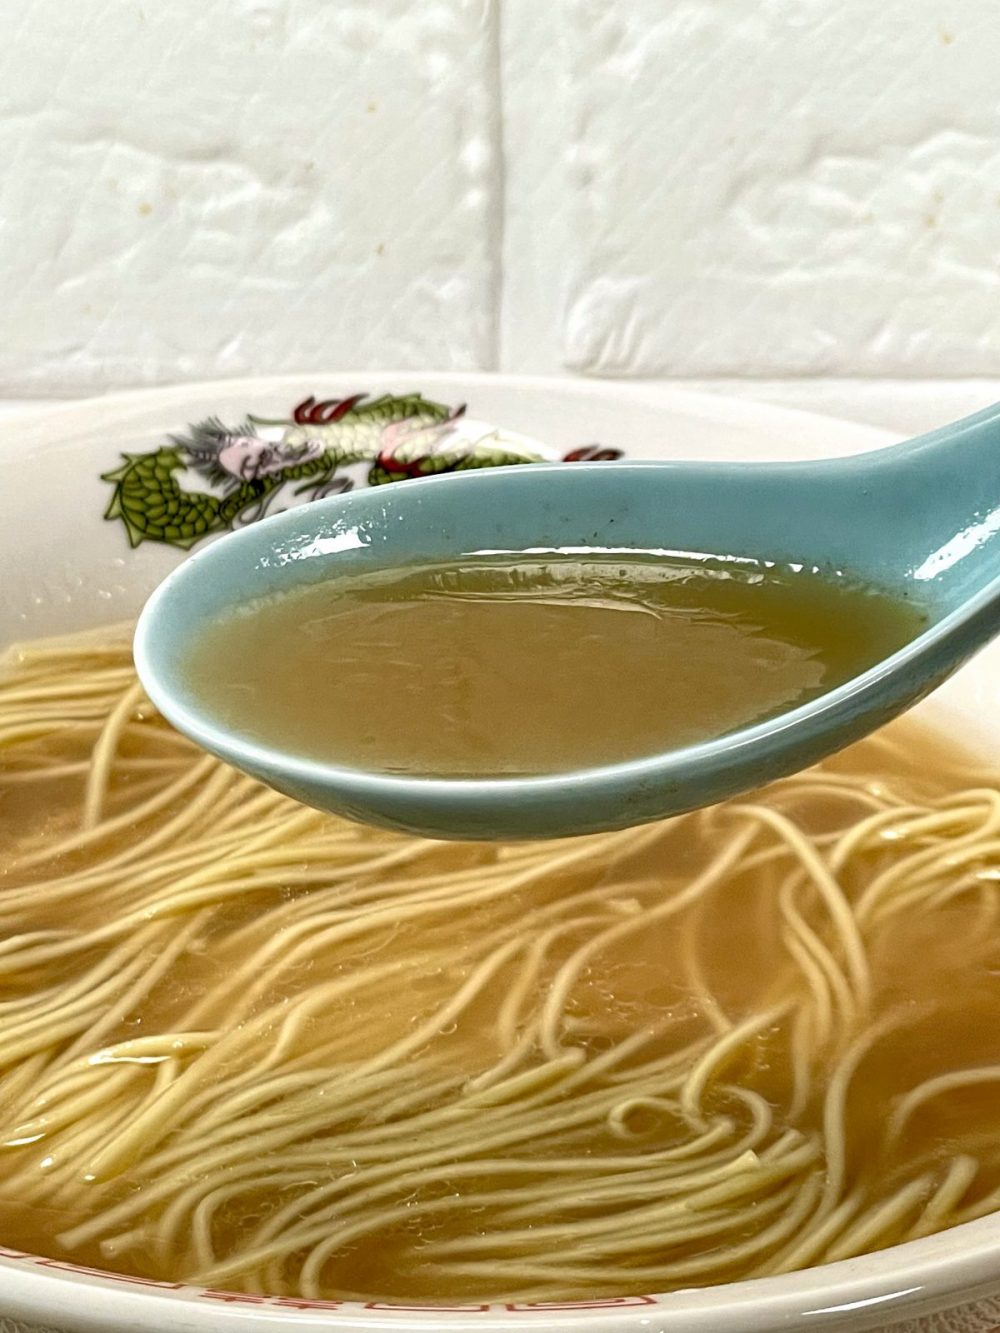 2. 福岡「ラーメン仮面」（長尾製麺）　スープは豚骨をしっかりと炊き上げた口当たりは良いが旨みと余韻が強いスープ